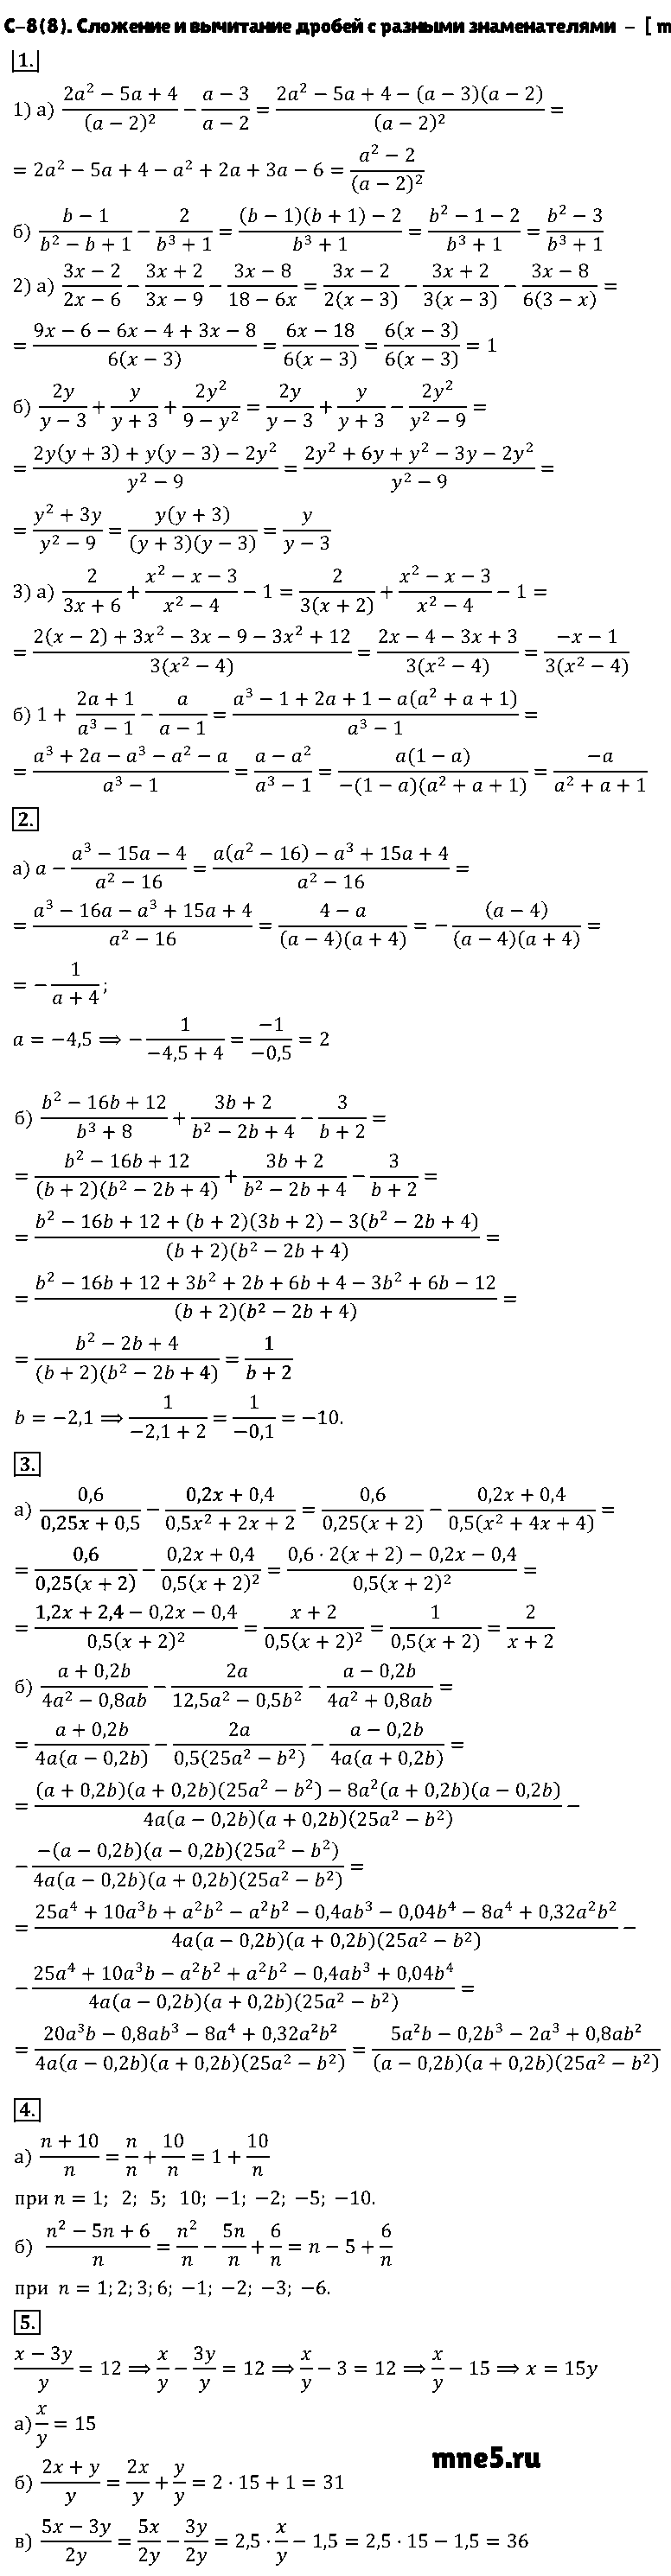 ГДЗ Алгебра 8 класс - С-8(8). Сложение и вычитание дробей с разными знаменателями